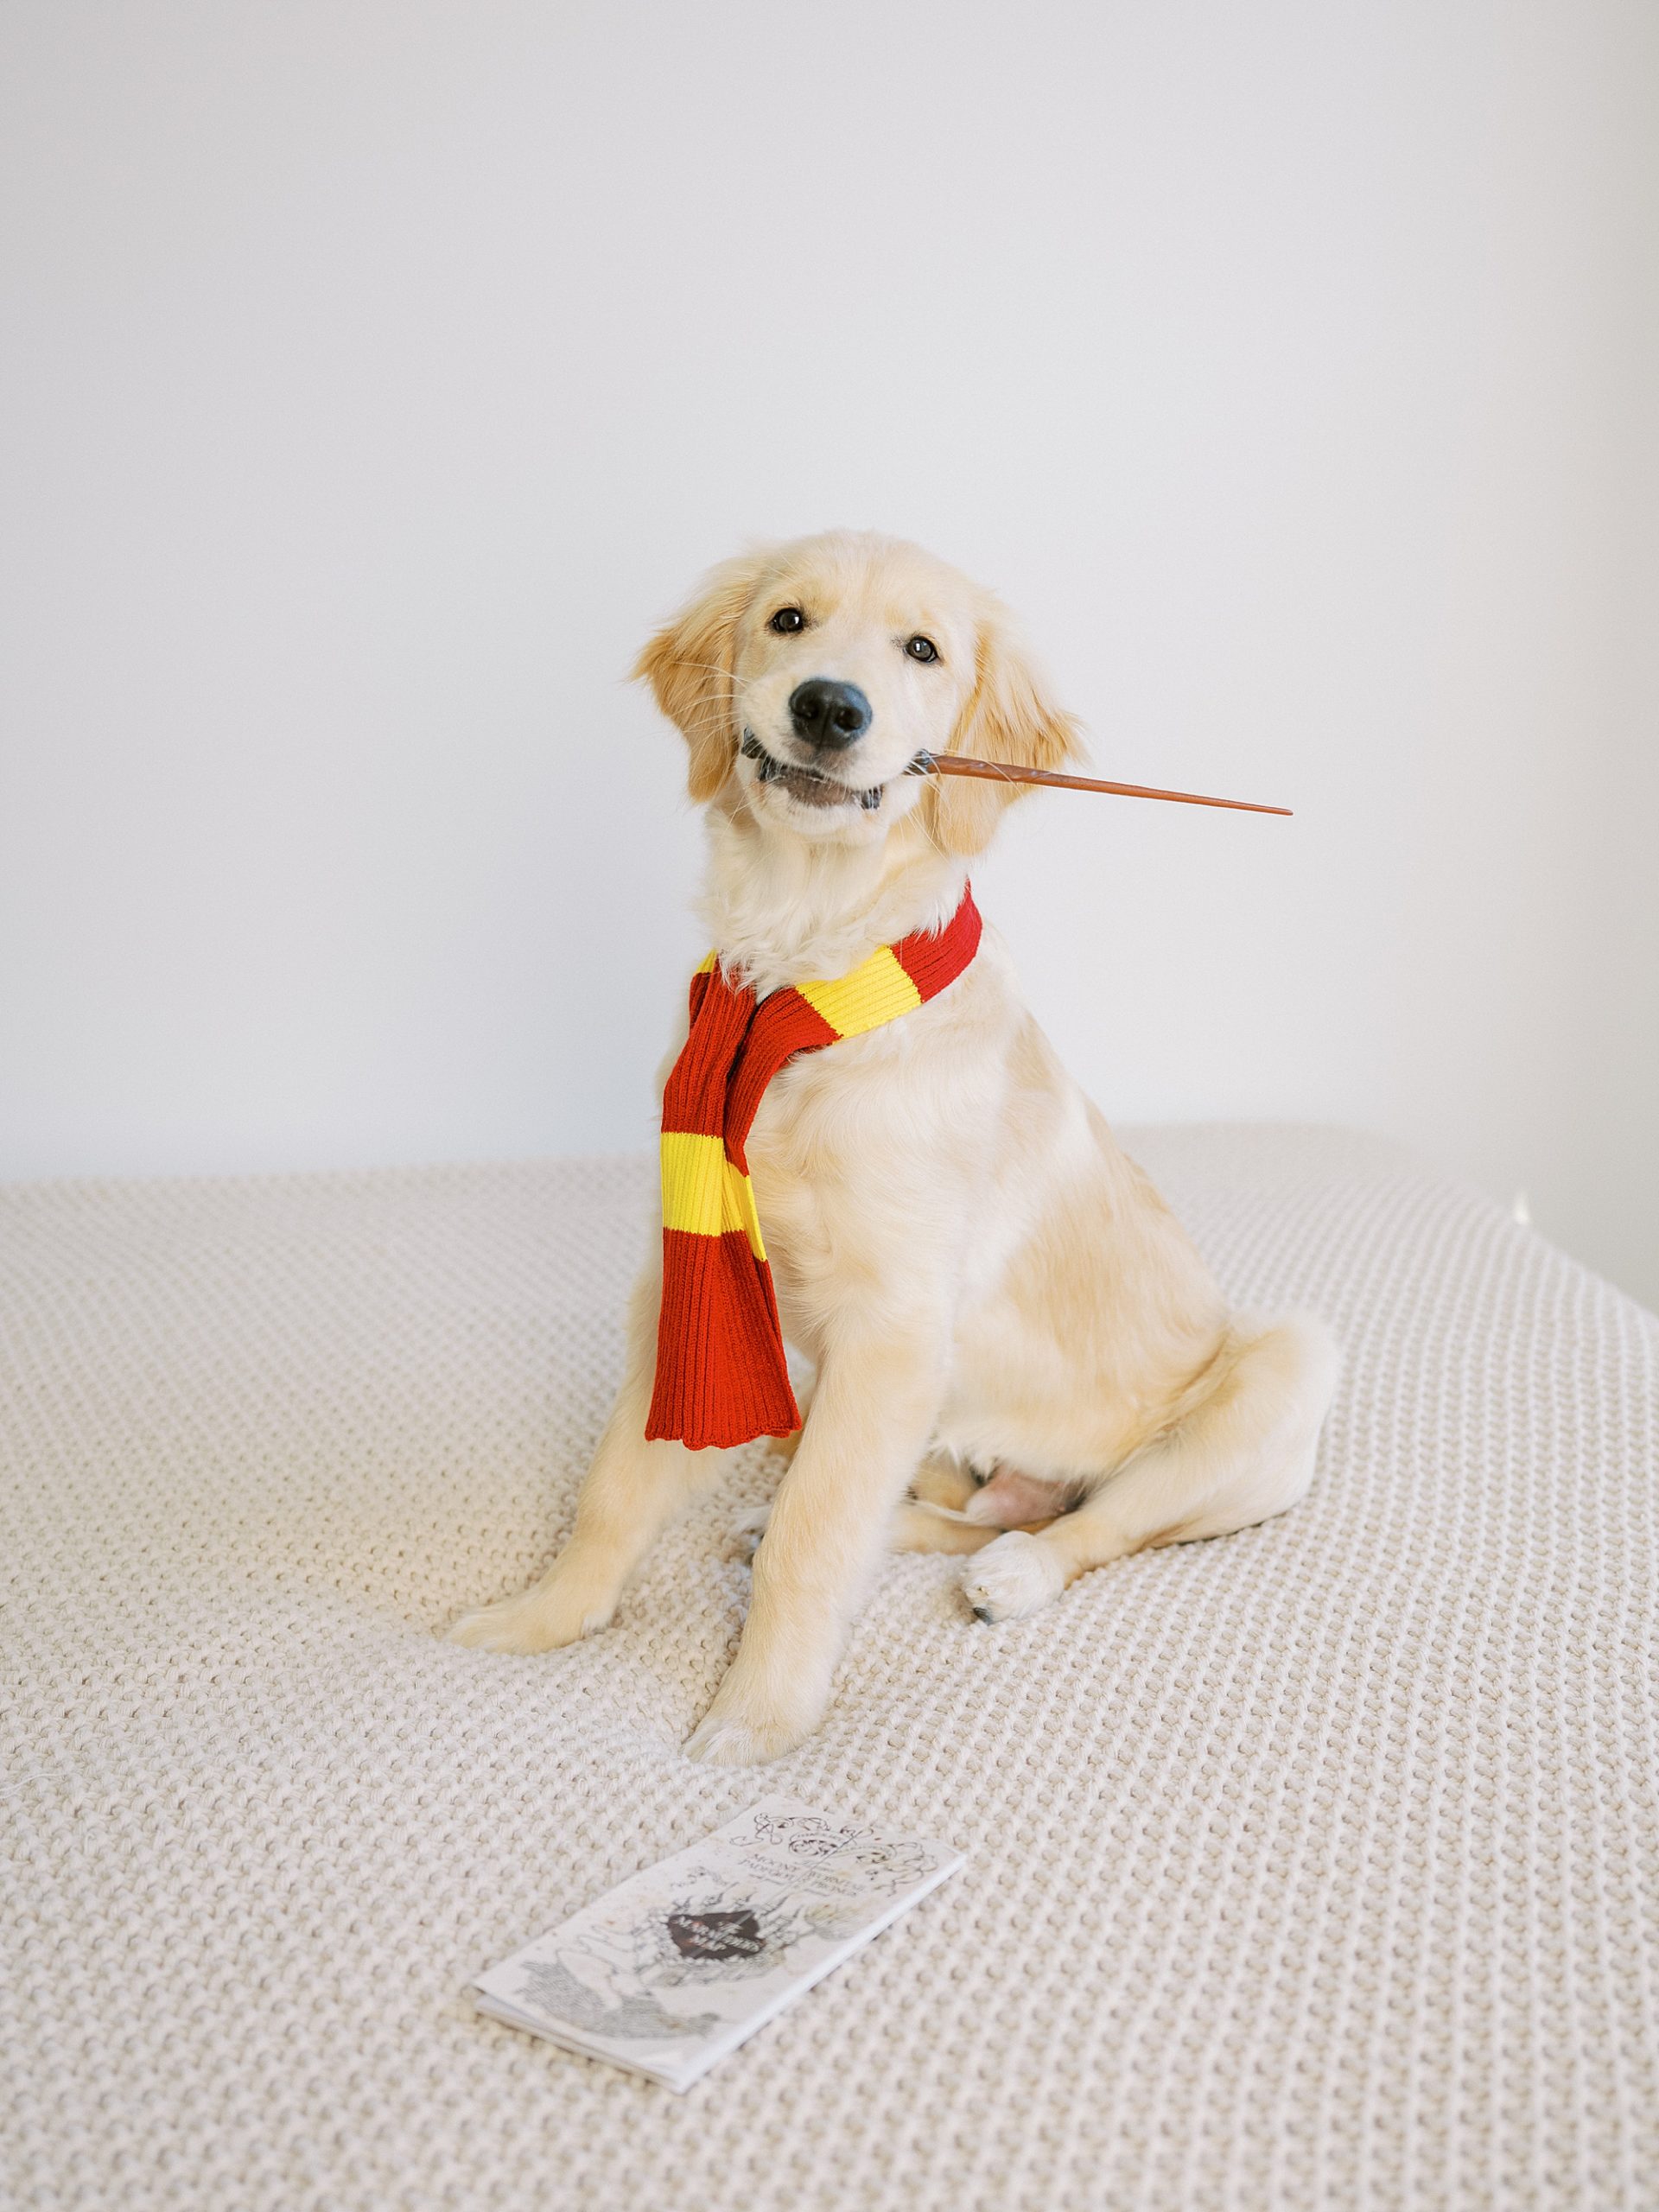 harry potter dog costume photo